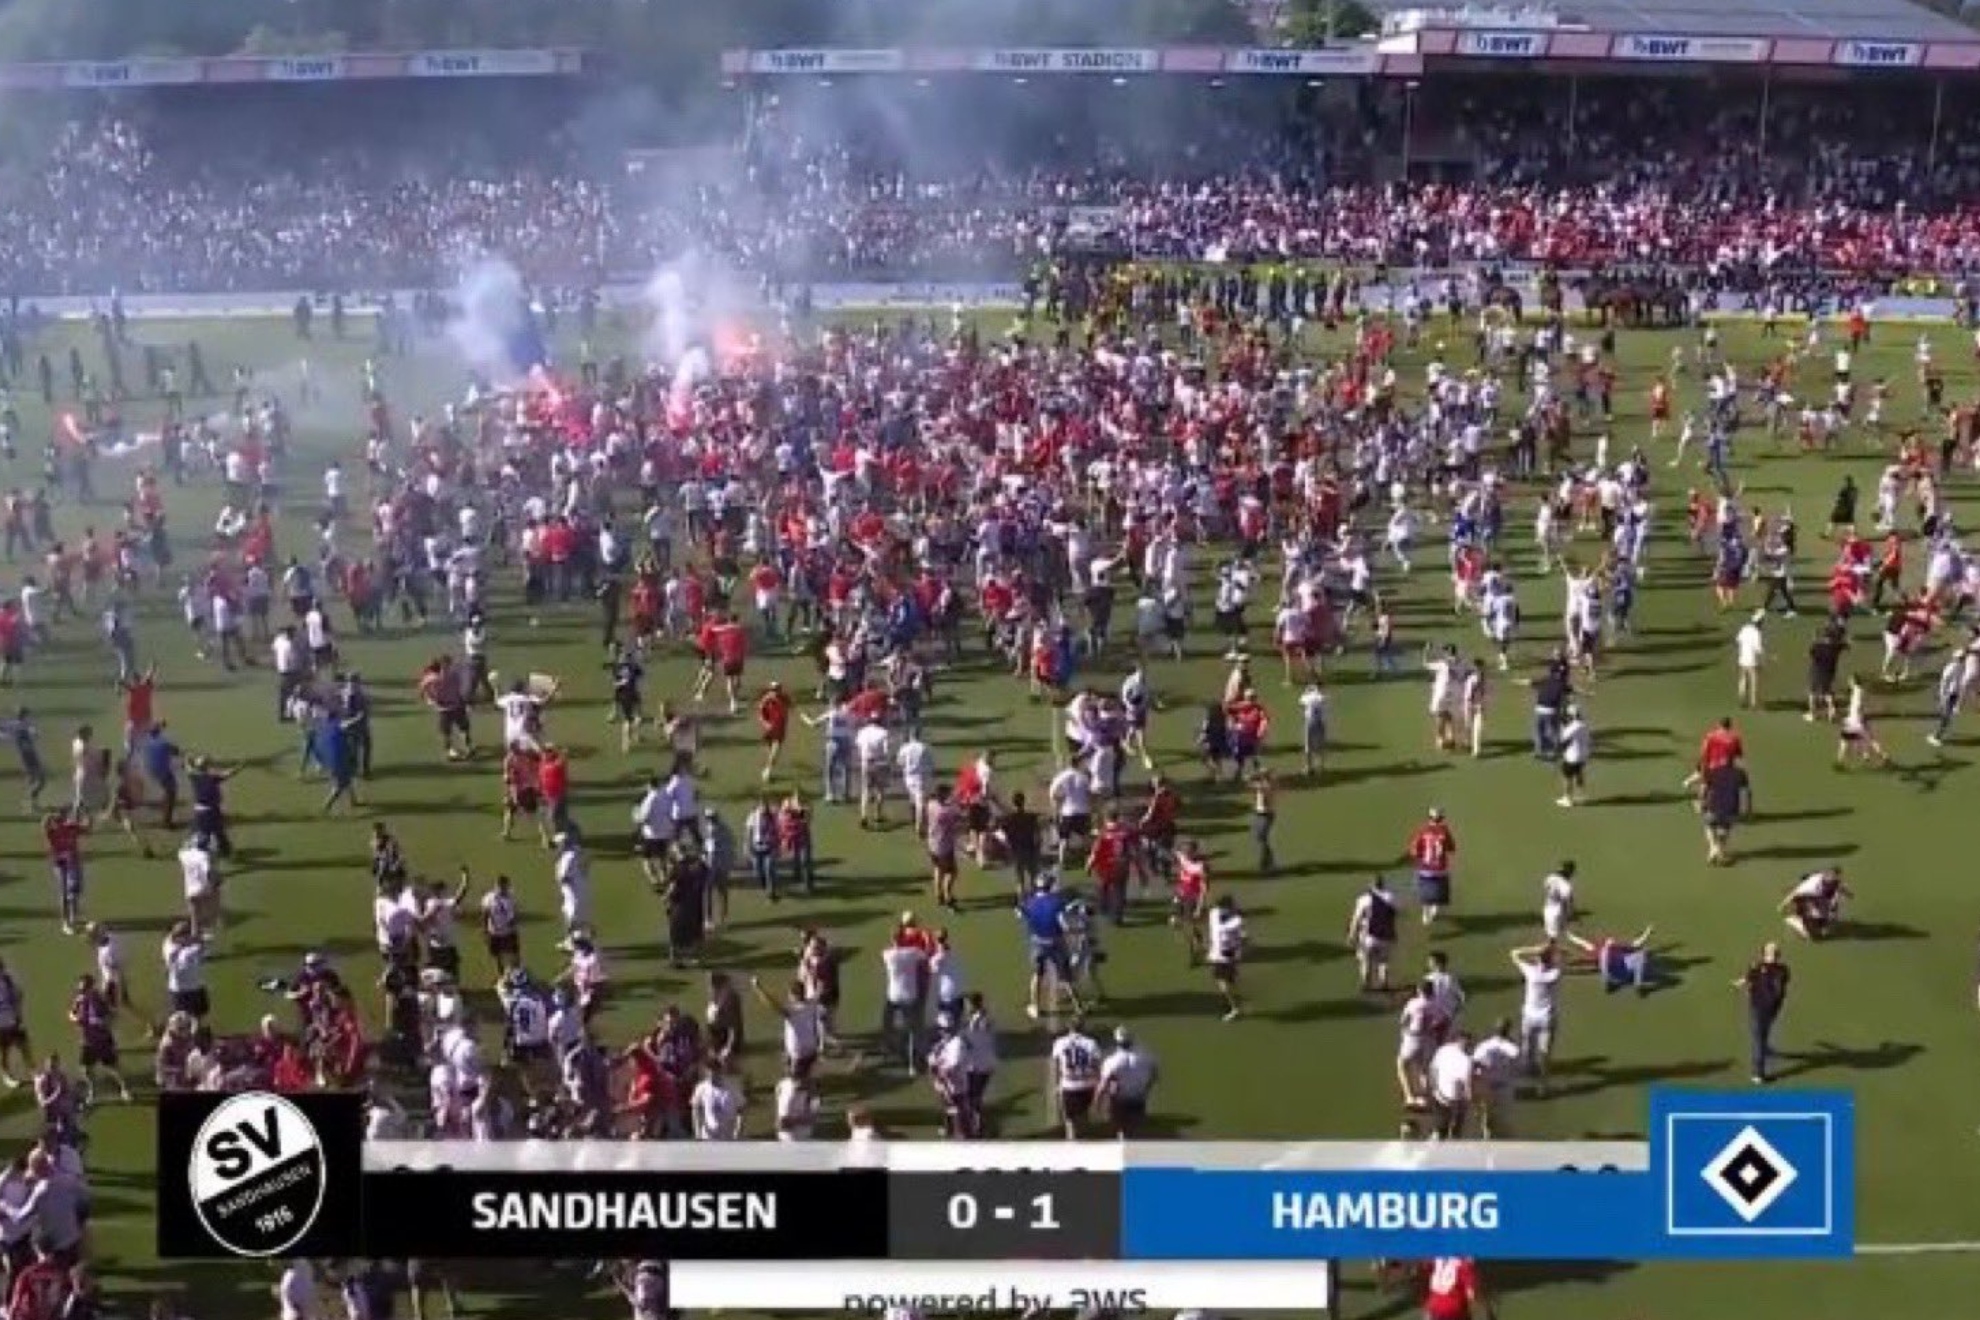 Drama en el césped con la afición del Hamburgo que invade el campo festejando el ascenso... ¡que finalmente no llega!